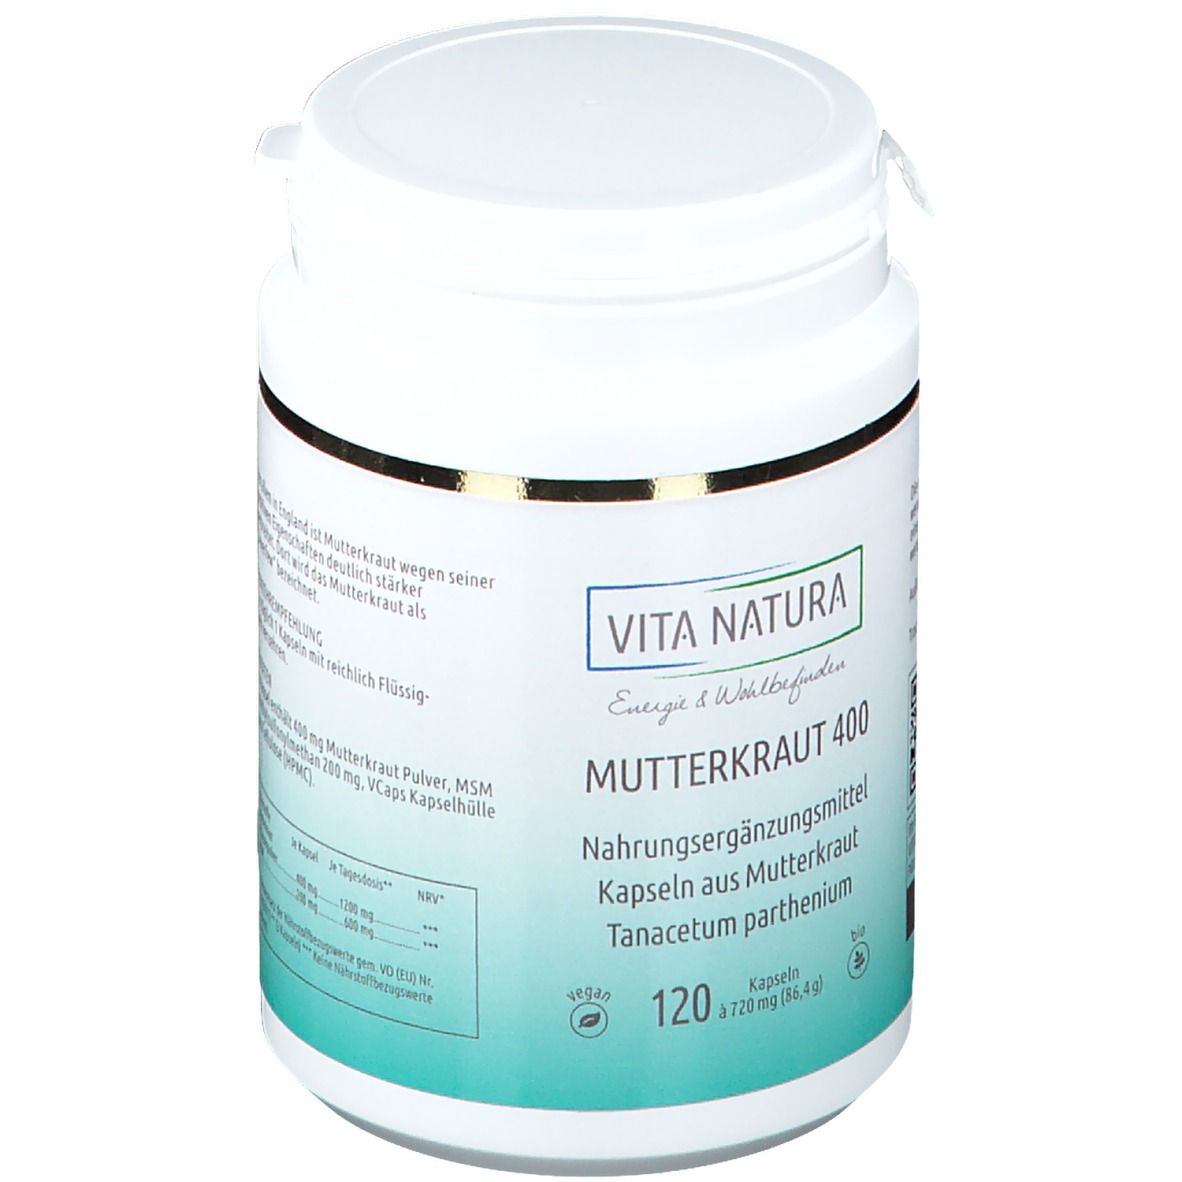 Vita Natura® Mutterkraut 400 mg